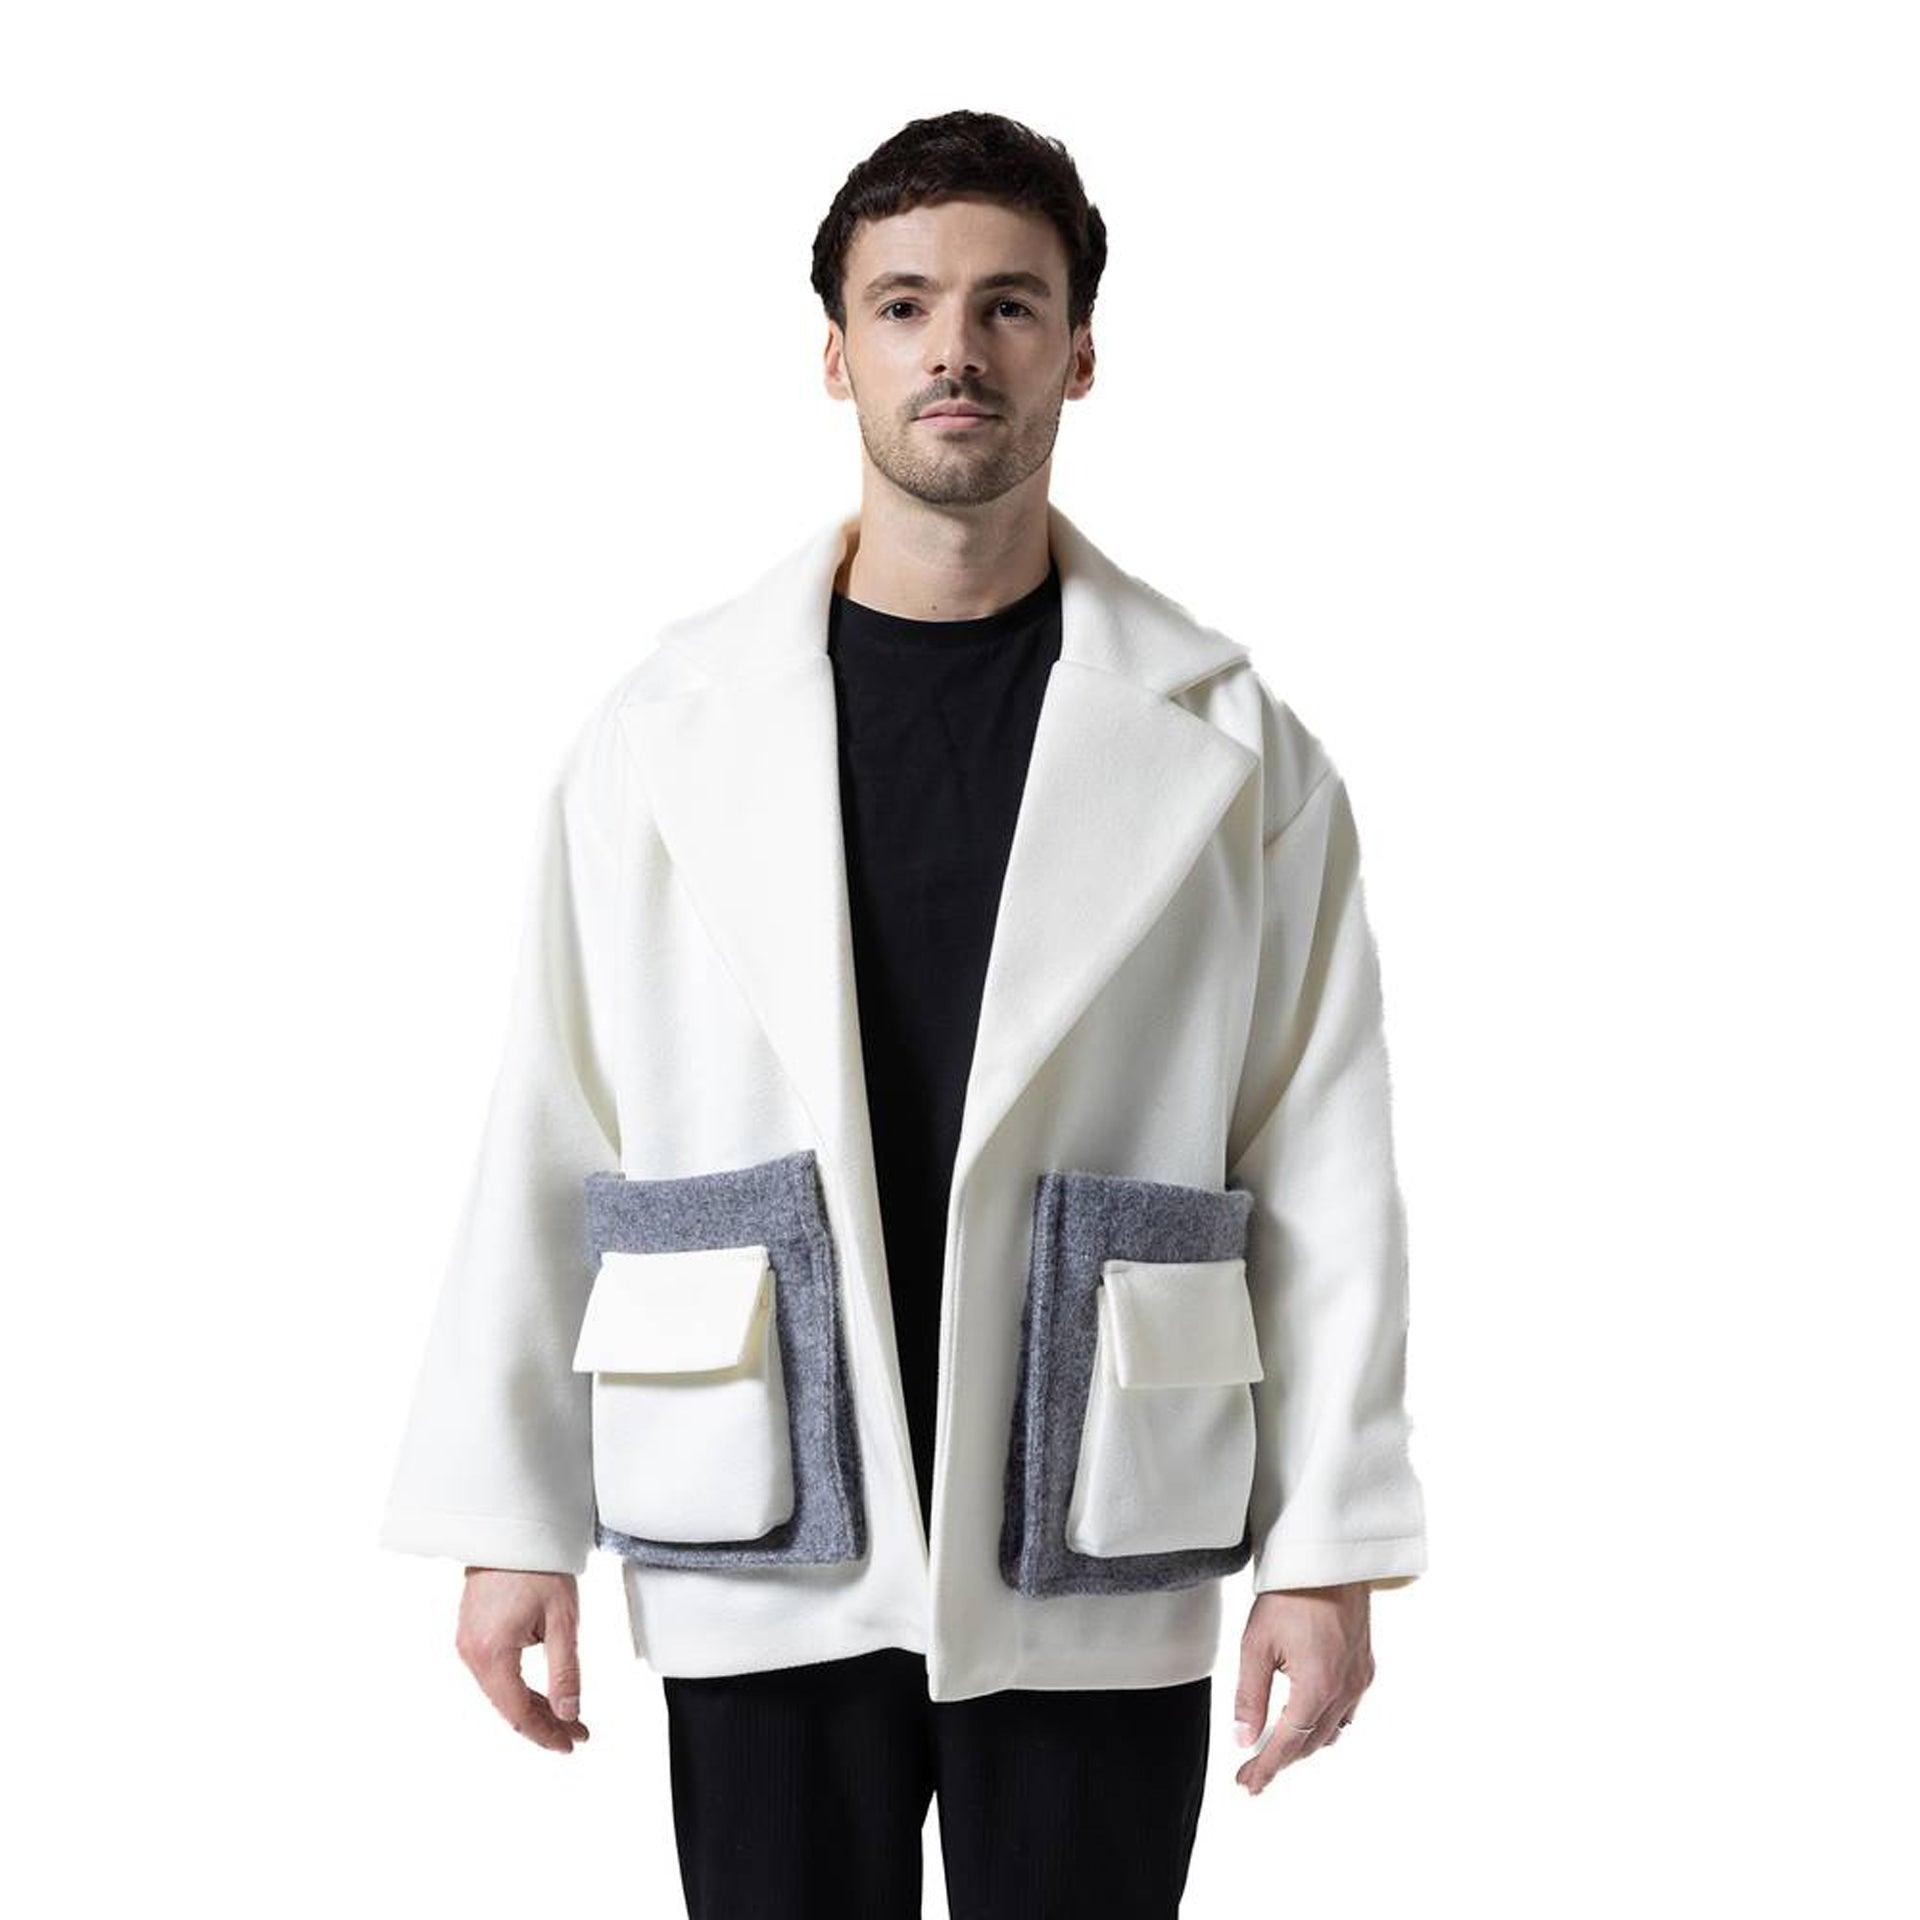 White & Gray Bouzerron Jacket From Hajruss - WECRE8